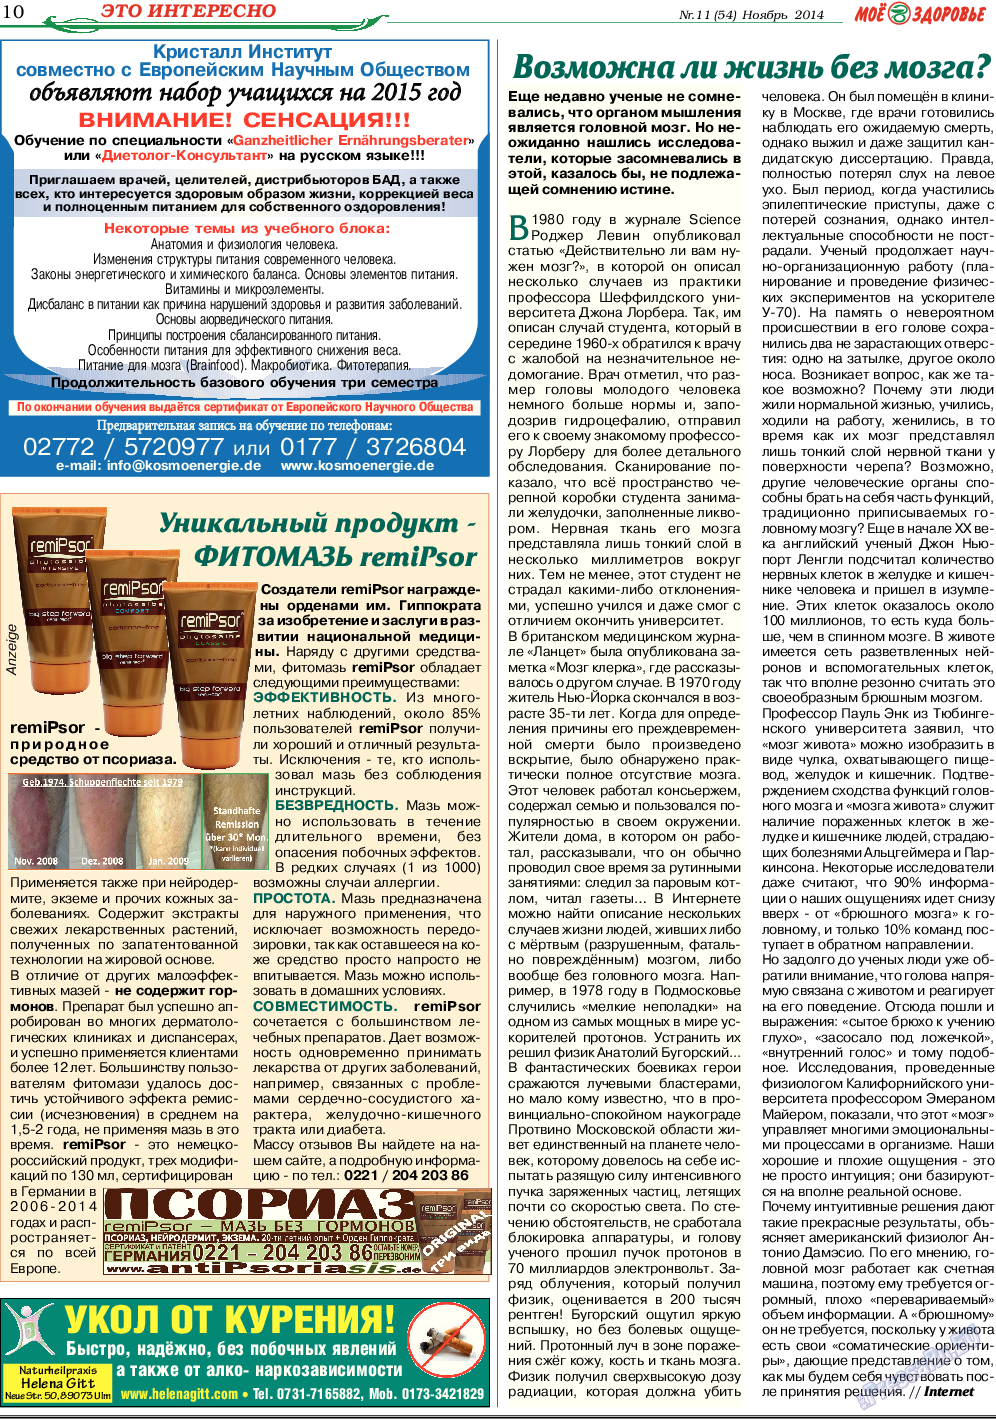 Кругозор (газета). 2014 год, номер 11, стр. 10